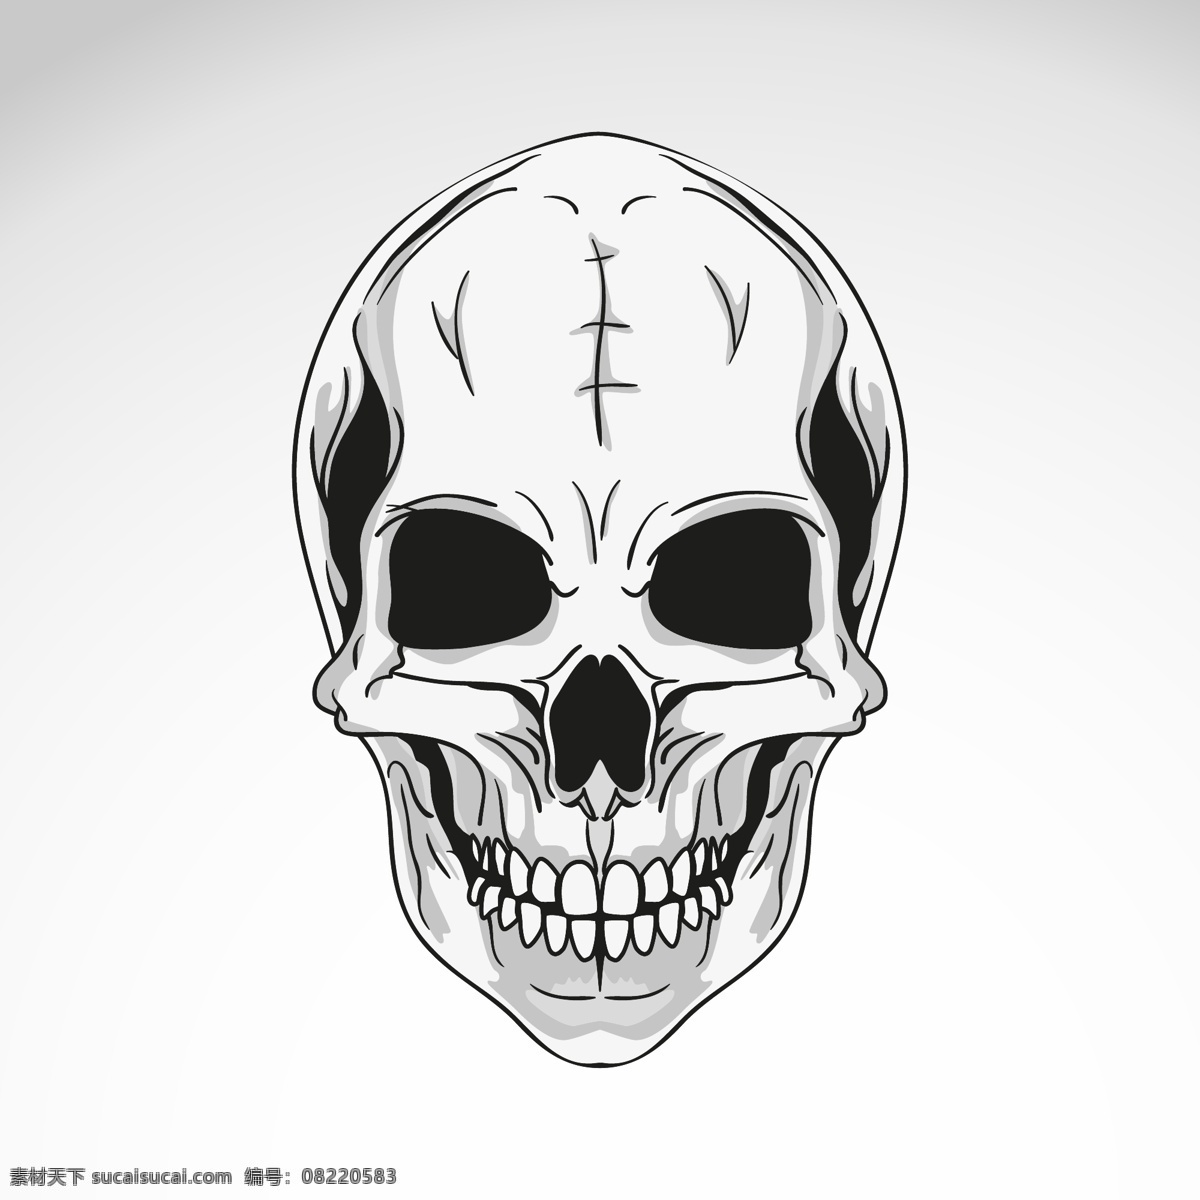 矢量骷髅头 恐怖骷髅头 黑白骷髅头 纹身骷髅头 t恤图案 动漫动画 最新矢量素材